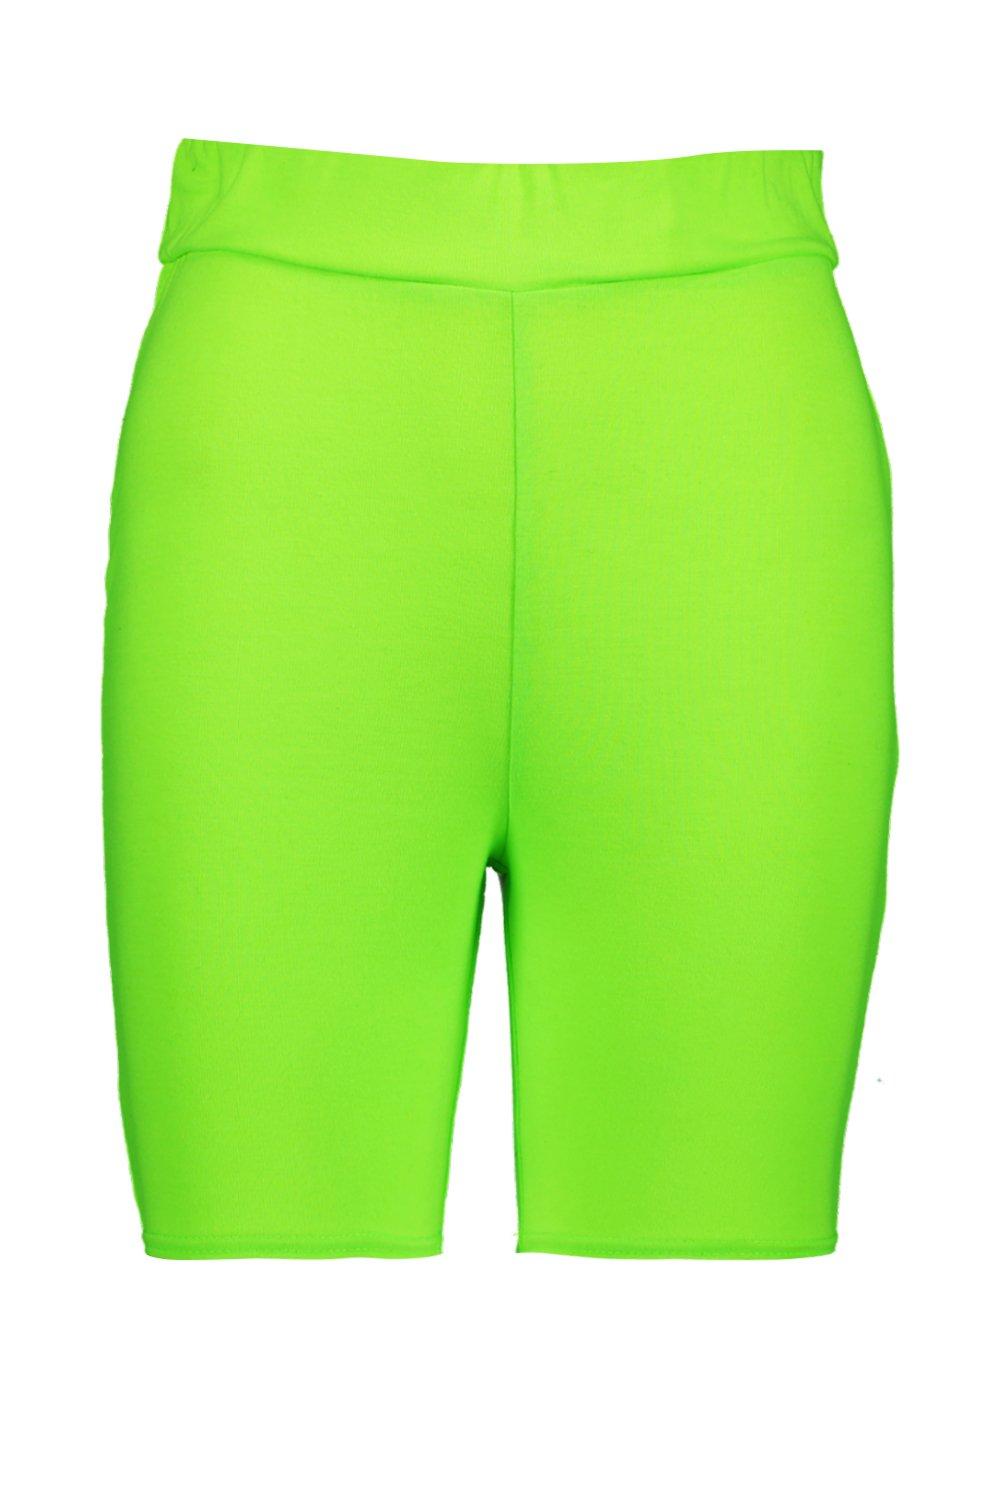 cycling shorts green